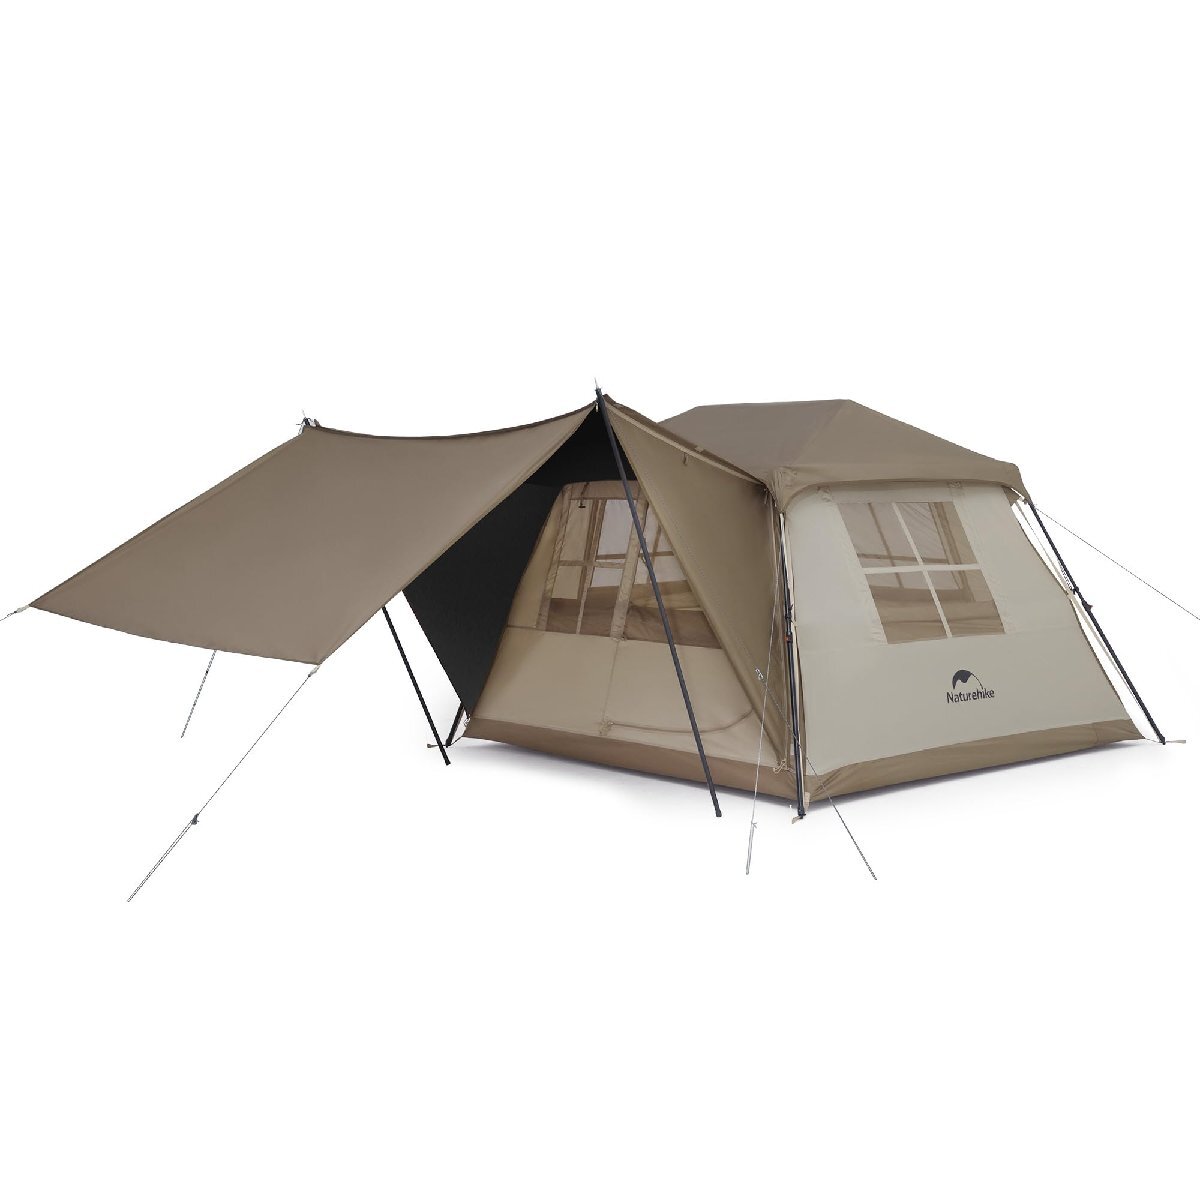 Naturehike公式ショップ ワンタッチ テント Ti Black新型素材 UPF12500+ 拡張キャノピー キャンプ ロッジ型 設営簡単 u_画像1